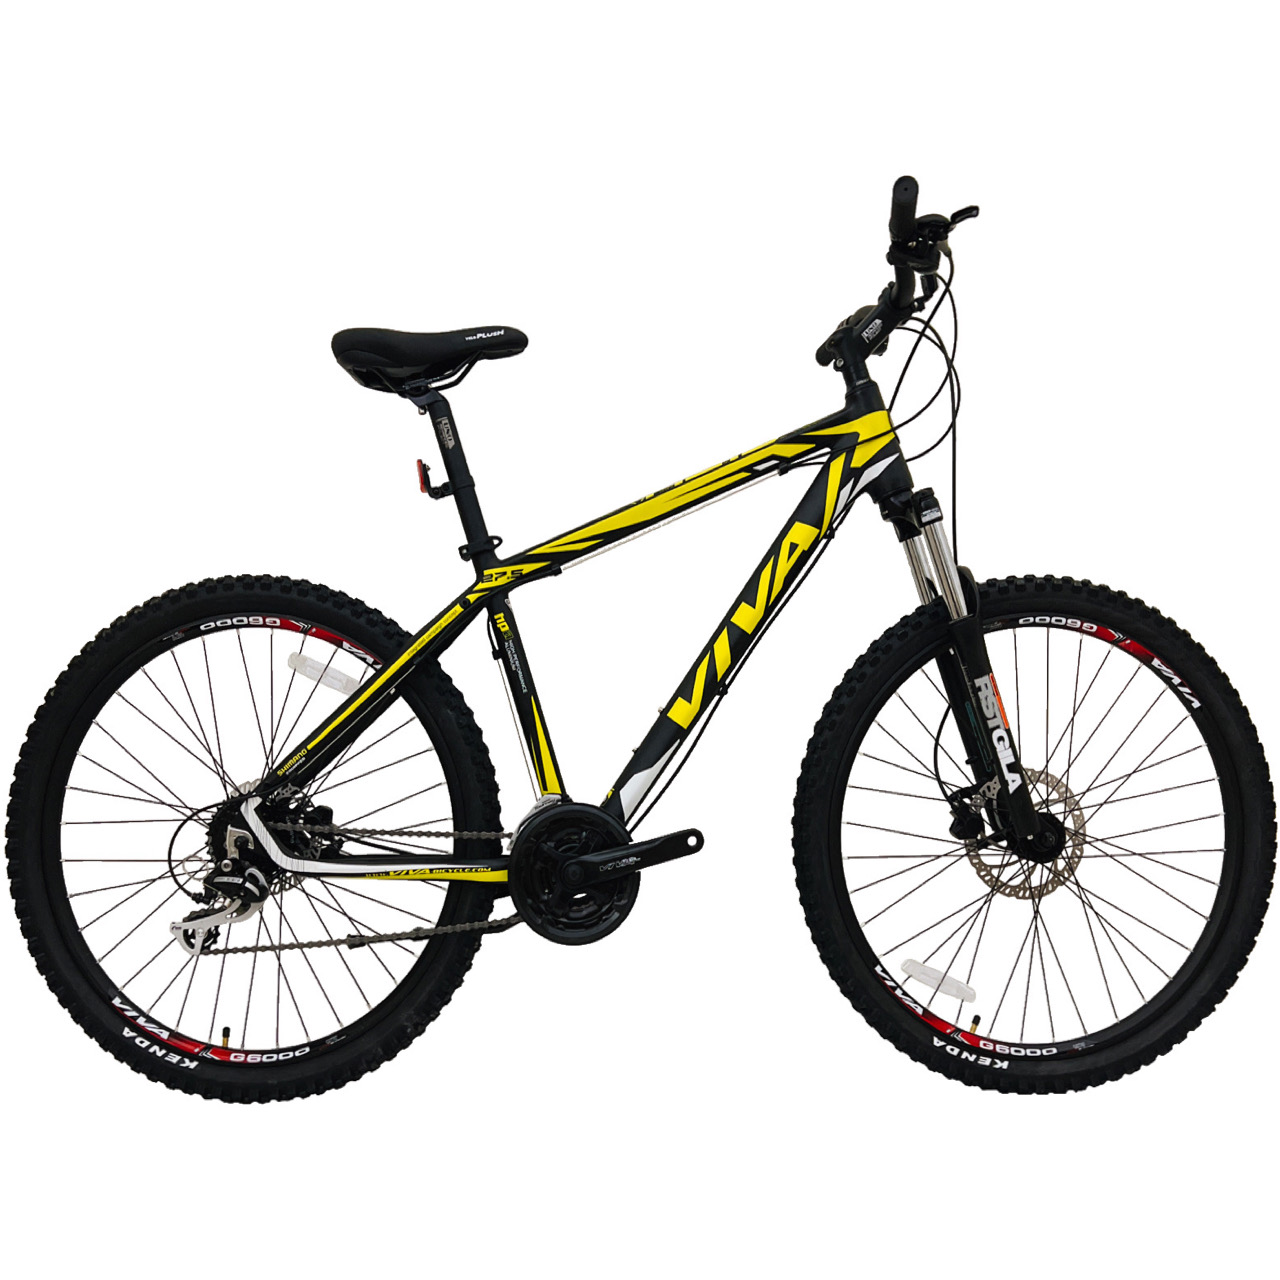 نکته خرید - قیمت روز دوچرخه کوهستان ویوا مدل ACID کد هیدرولیک سایز 27.5 خرید